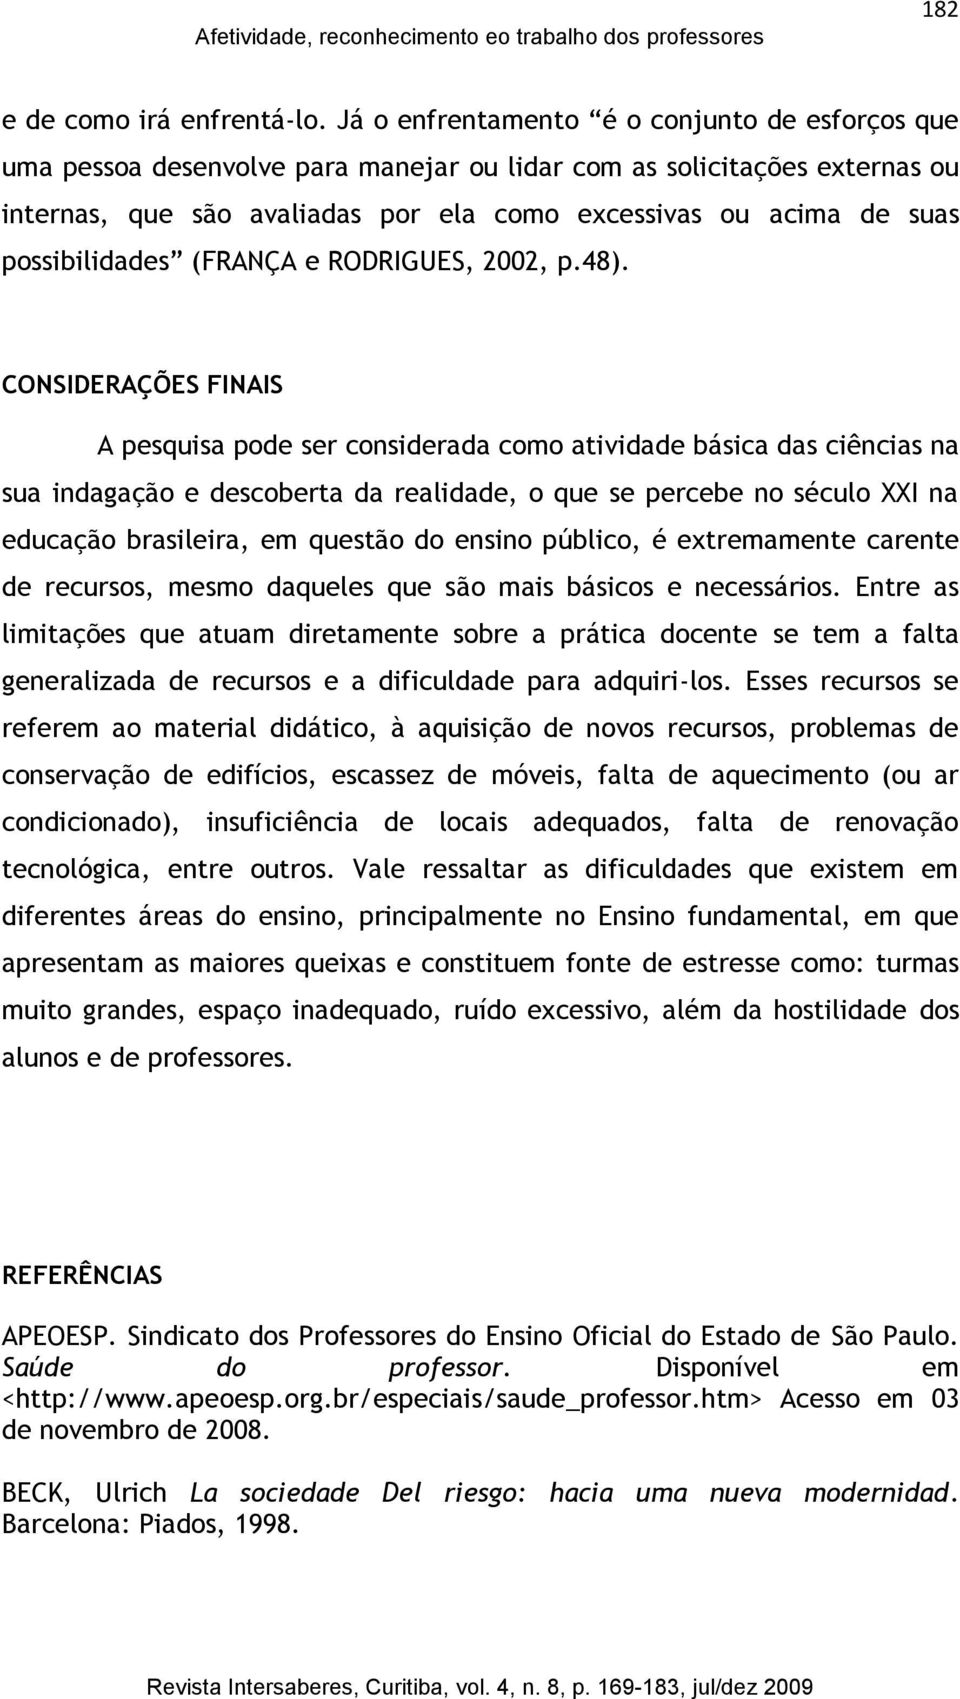 possibilidades (FRANÇA e RODRIGUES, 2002, p.48).